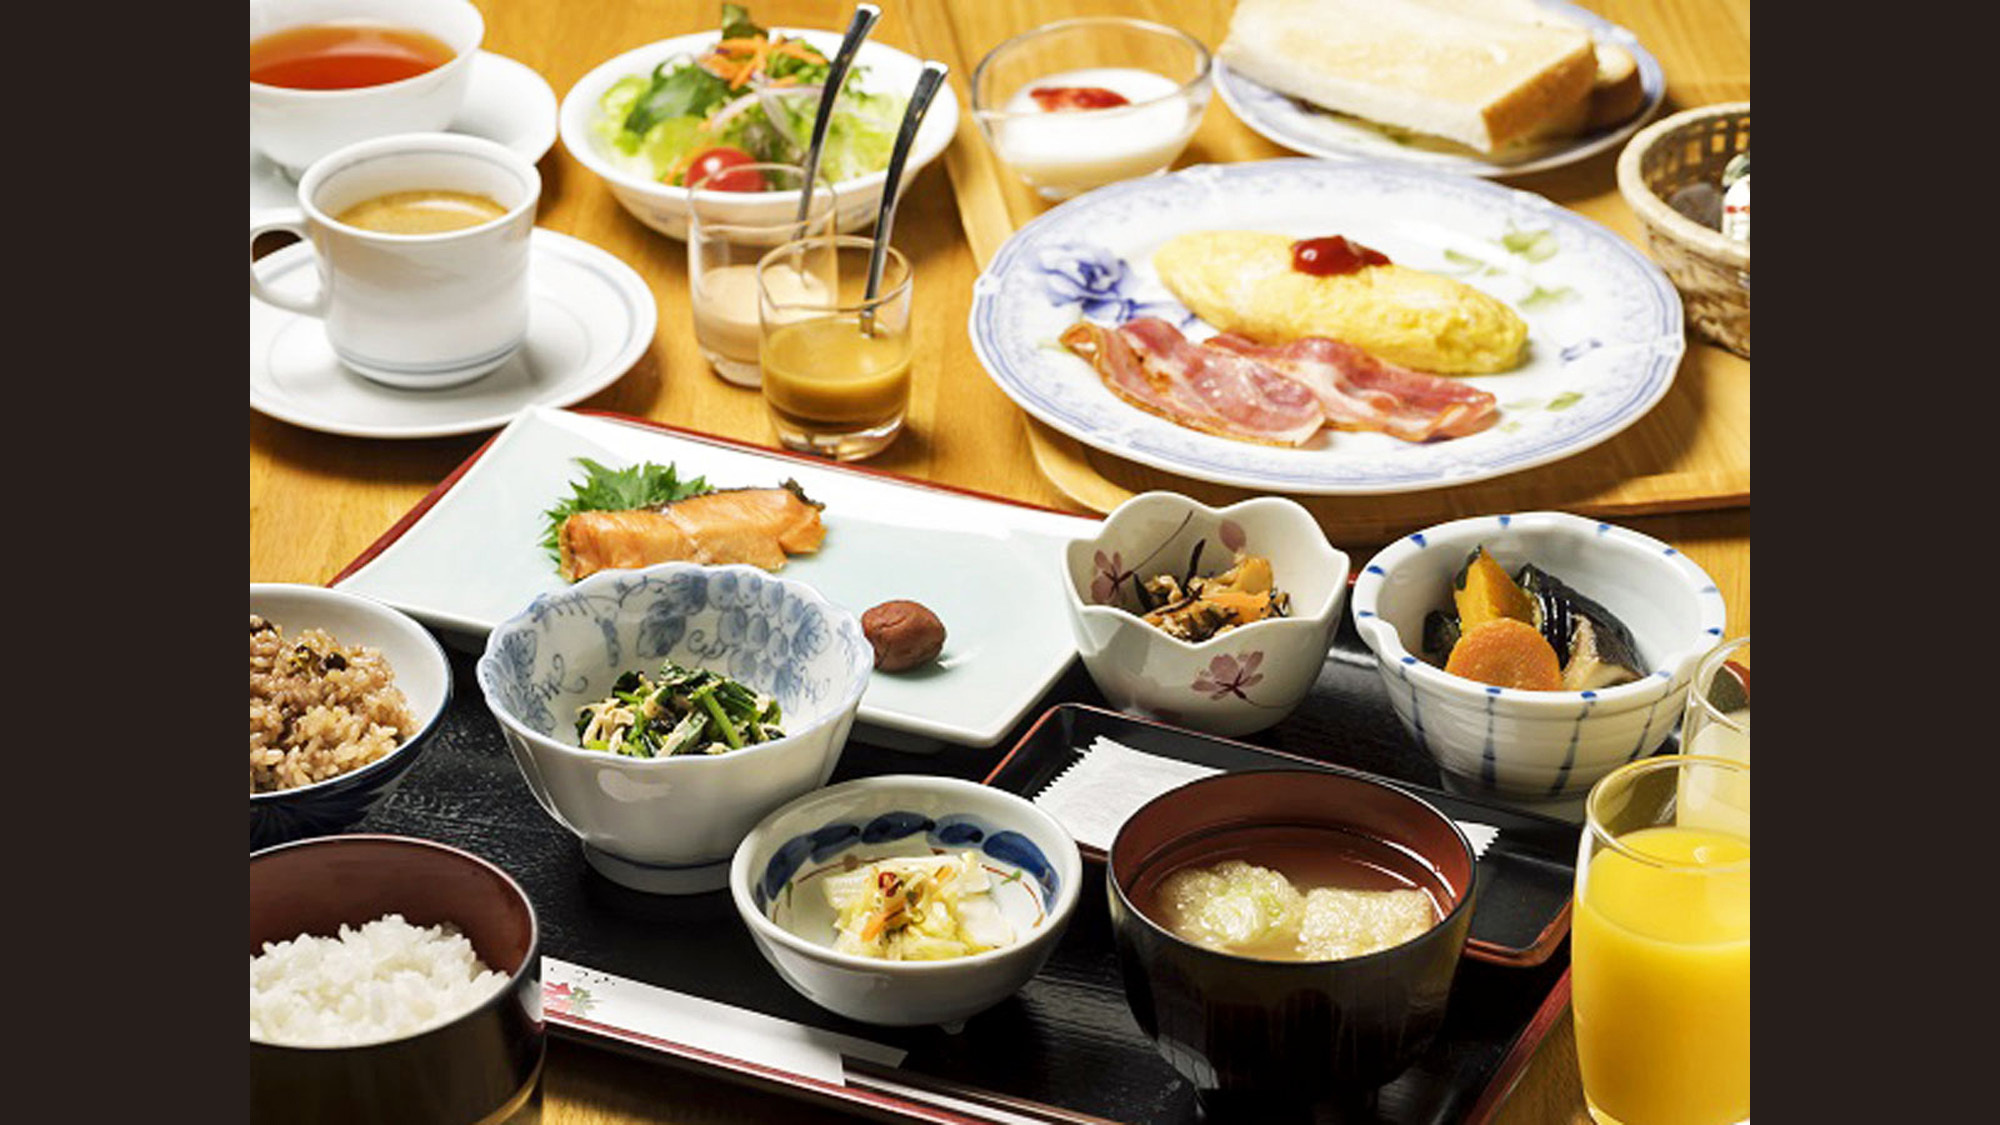 【朝食】和食・洋食から選べる朝食。和食は玄米・白米を、洋食は卵料理とハムなどの付け合わせを選べます。